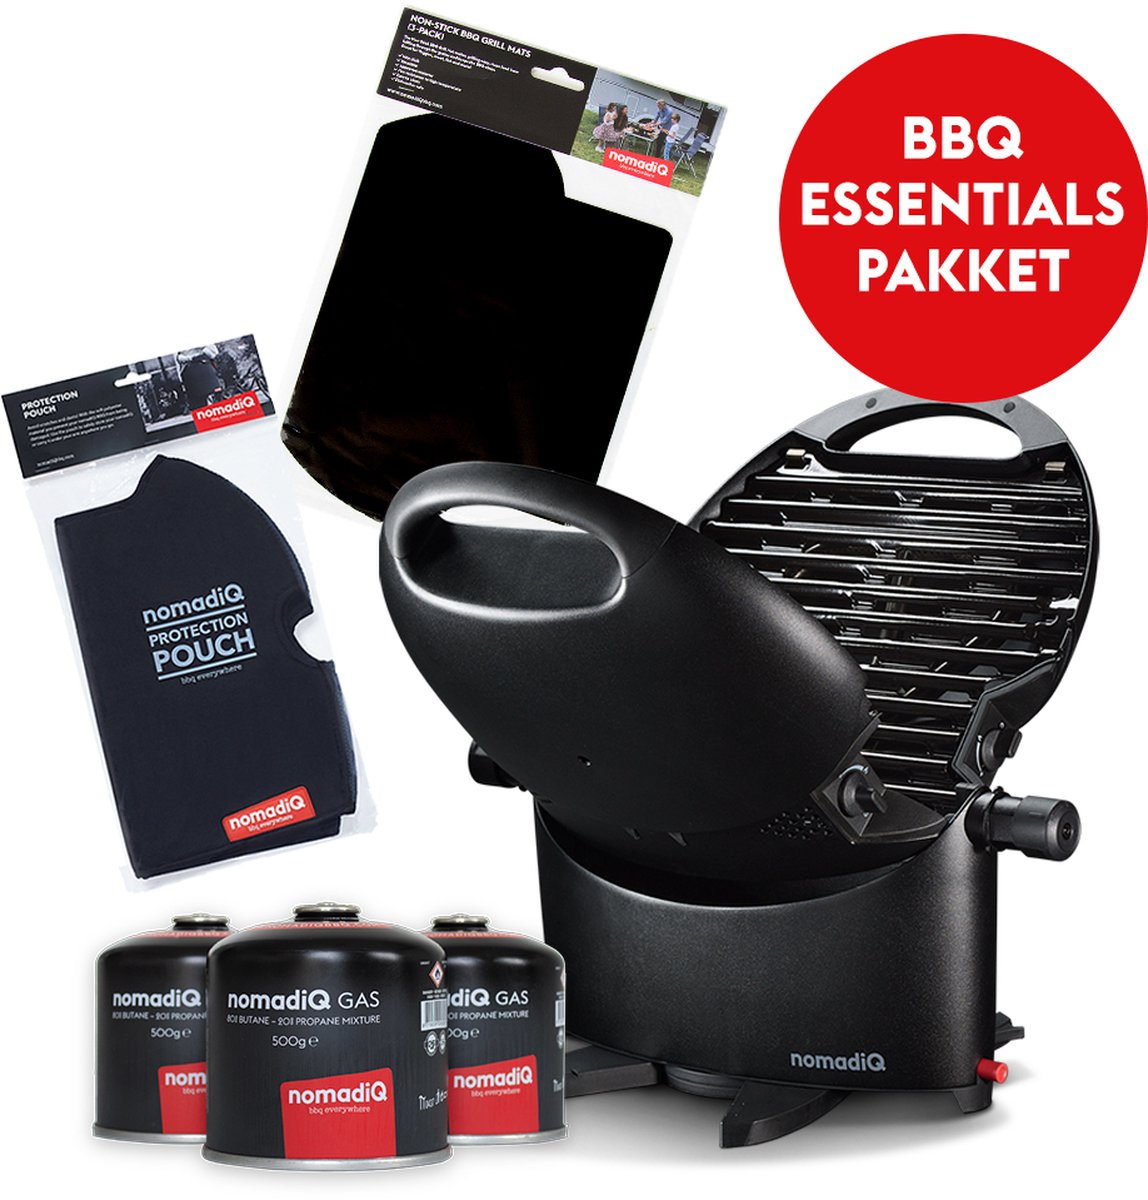 nomadiQ BBQ ESSENTIALS PAKKET - alles wat je nodig hebt om te starten met barbecueën